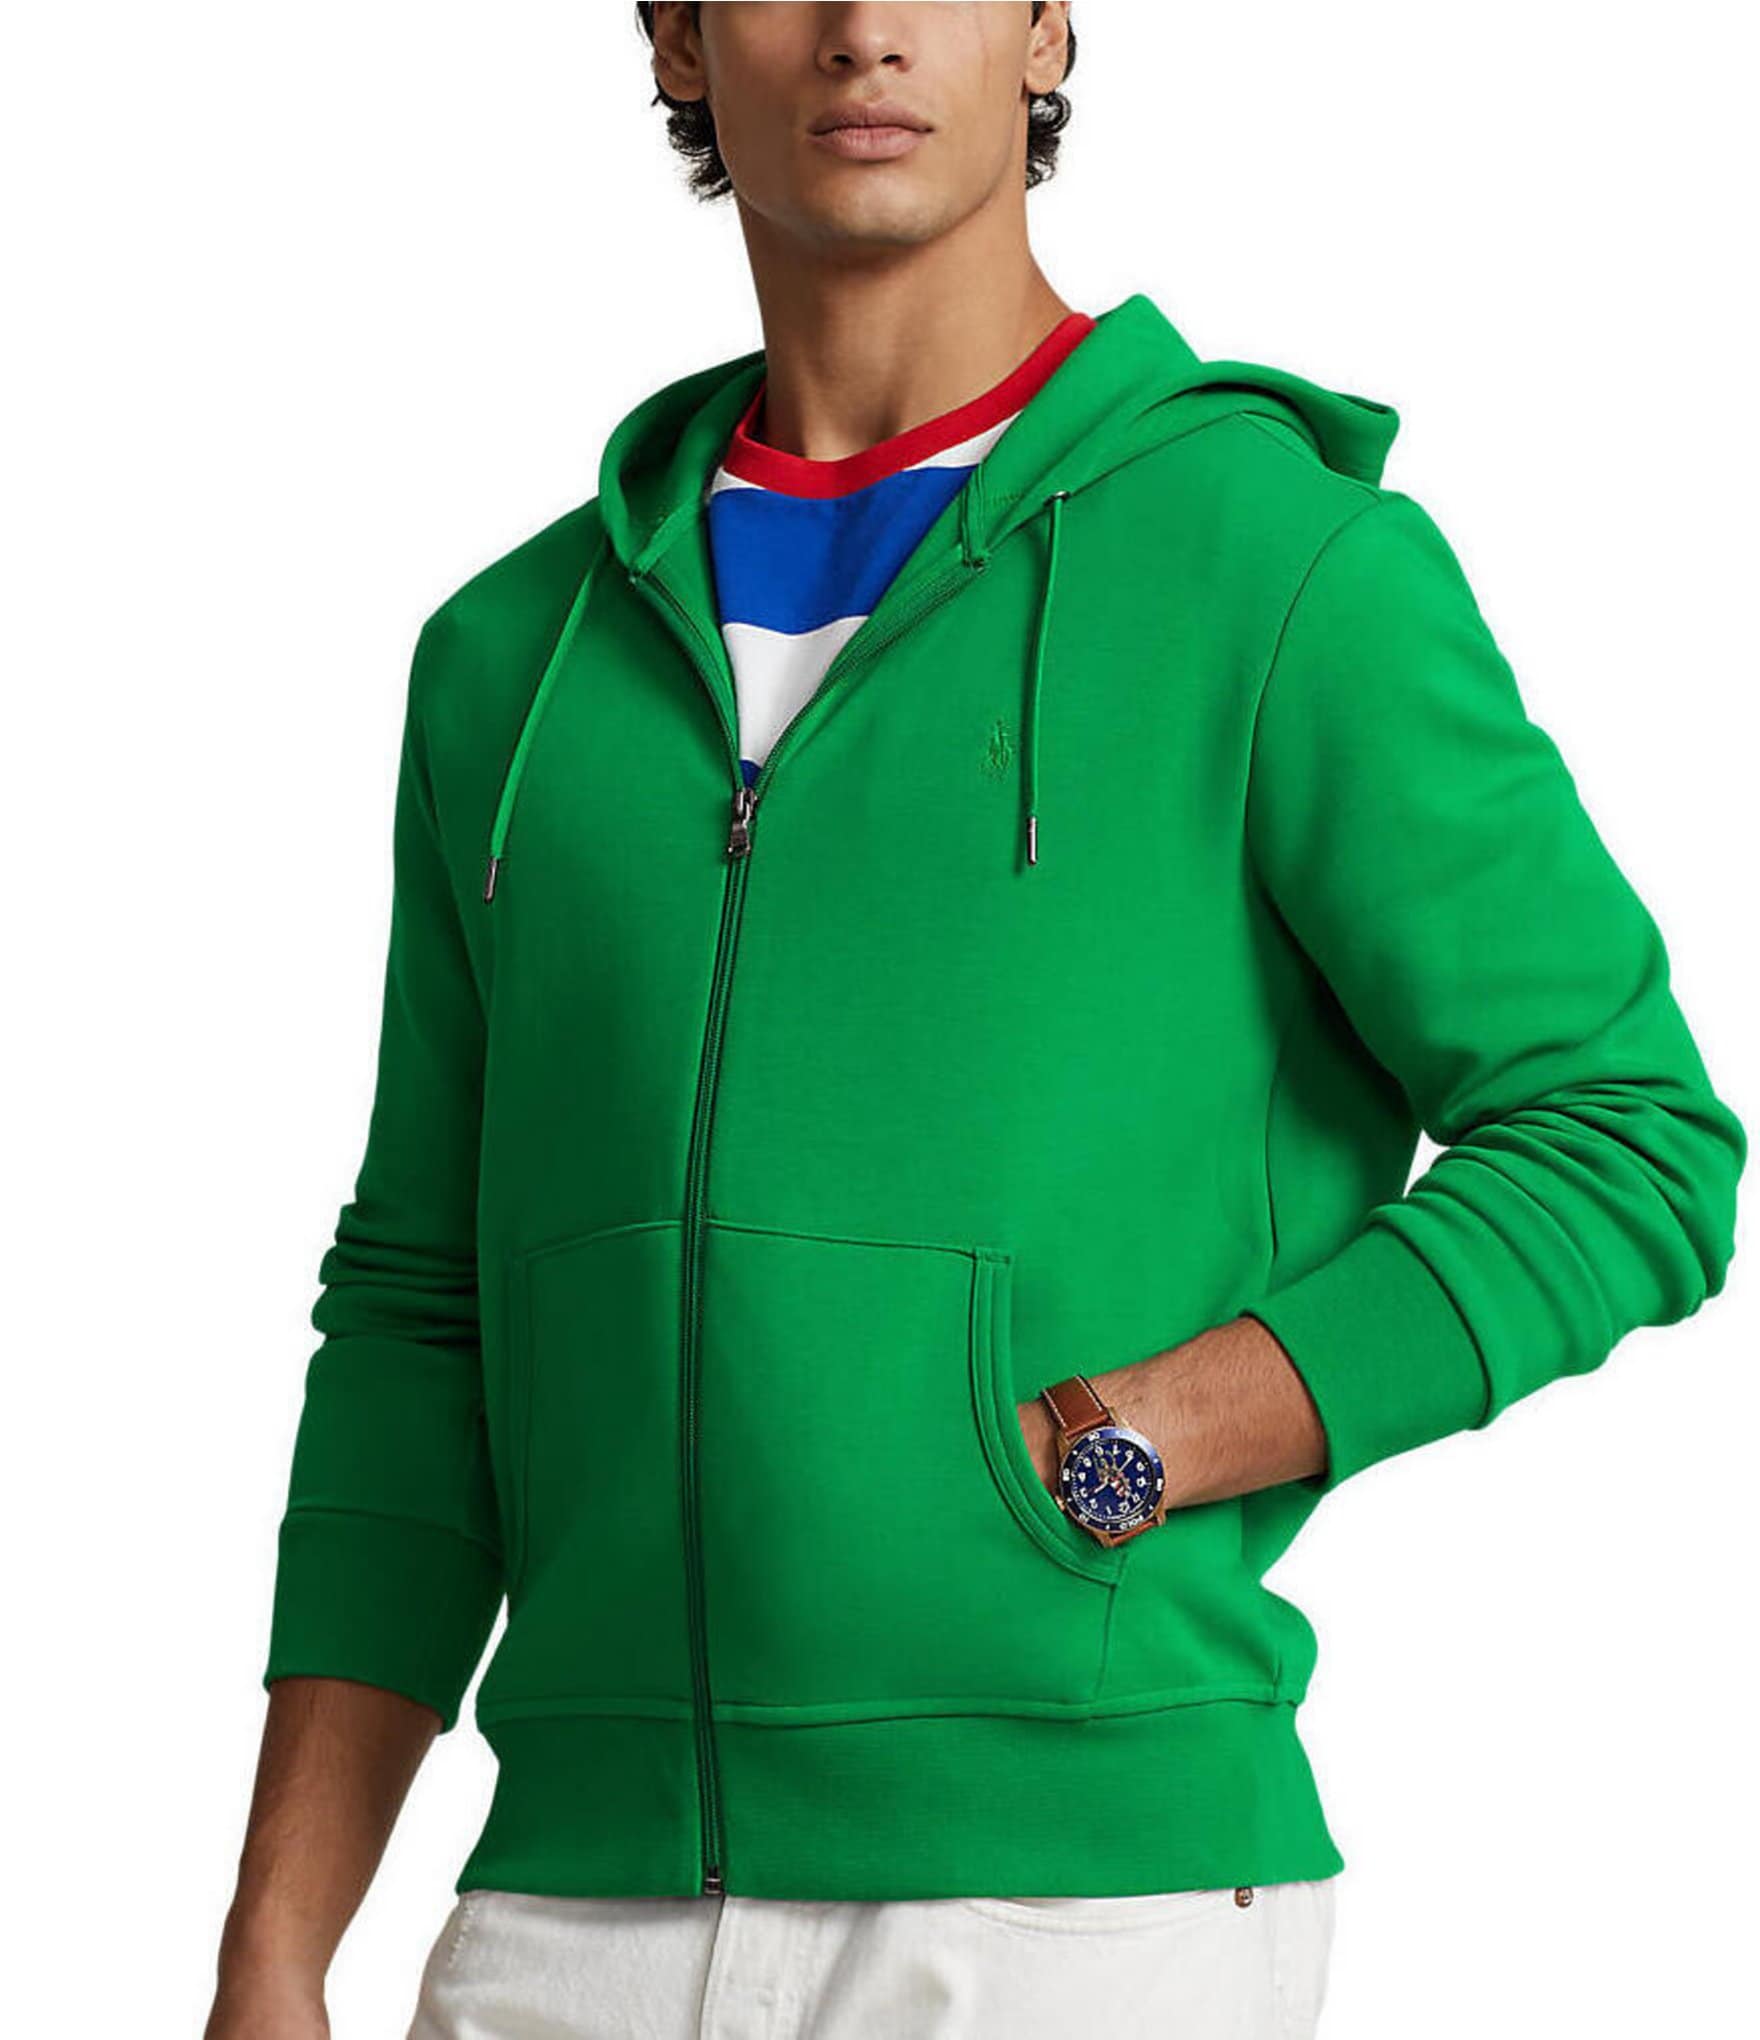 Polo Ralph Lauren Men's Olive Green Sweatshirt Hoodie Men's Sz 3XB